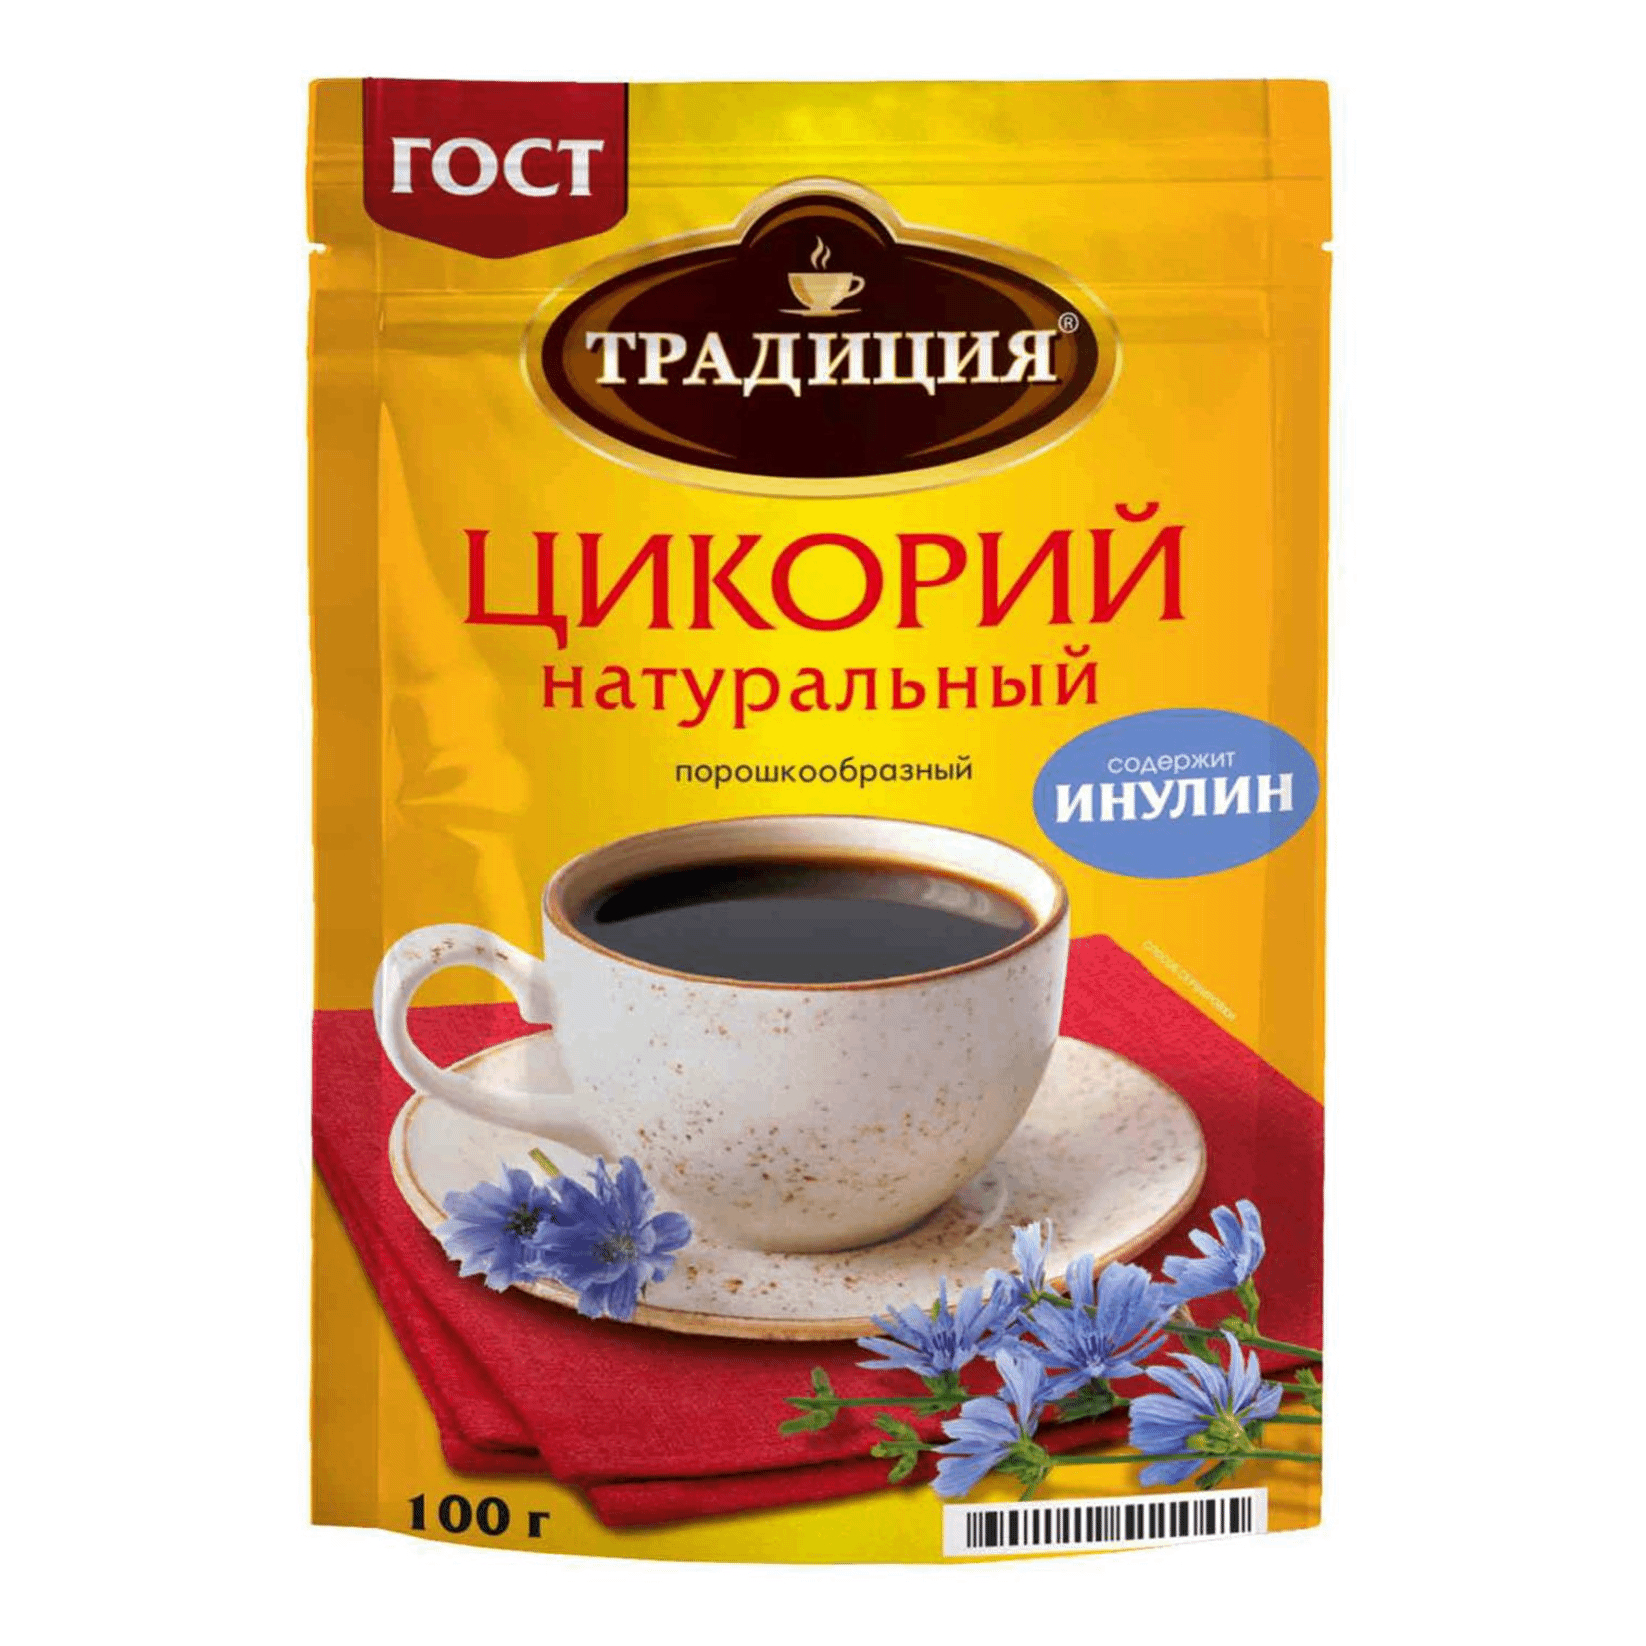 Цикорий Русский продукт Традиция натуральный 100 г